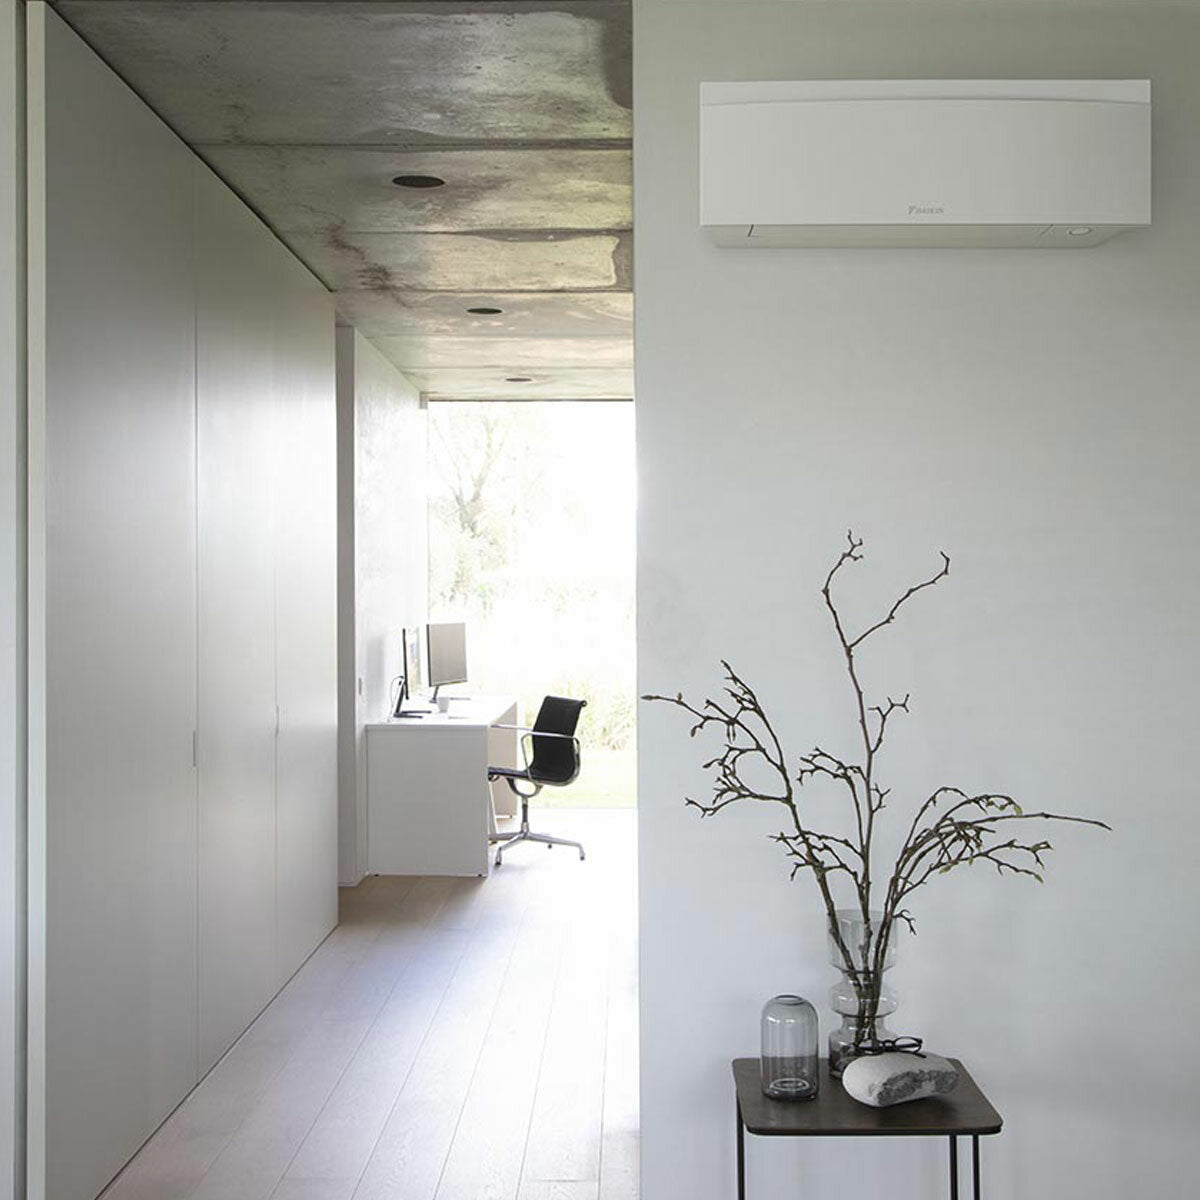 Daikin Emura air conditioner 3 split panels 9000+9000+12000+18000 BTU inverter A+ wifi outdoor unit 7.8 kW White